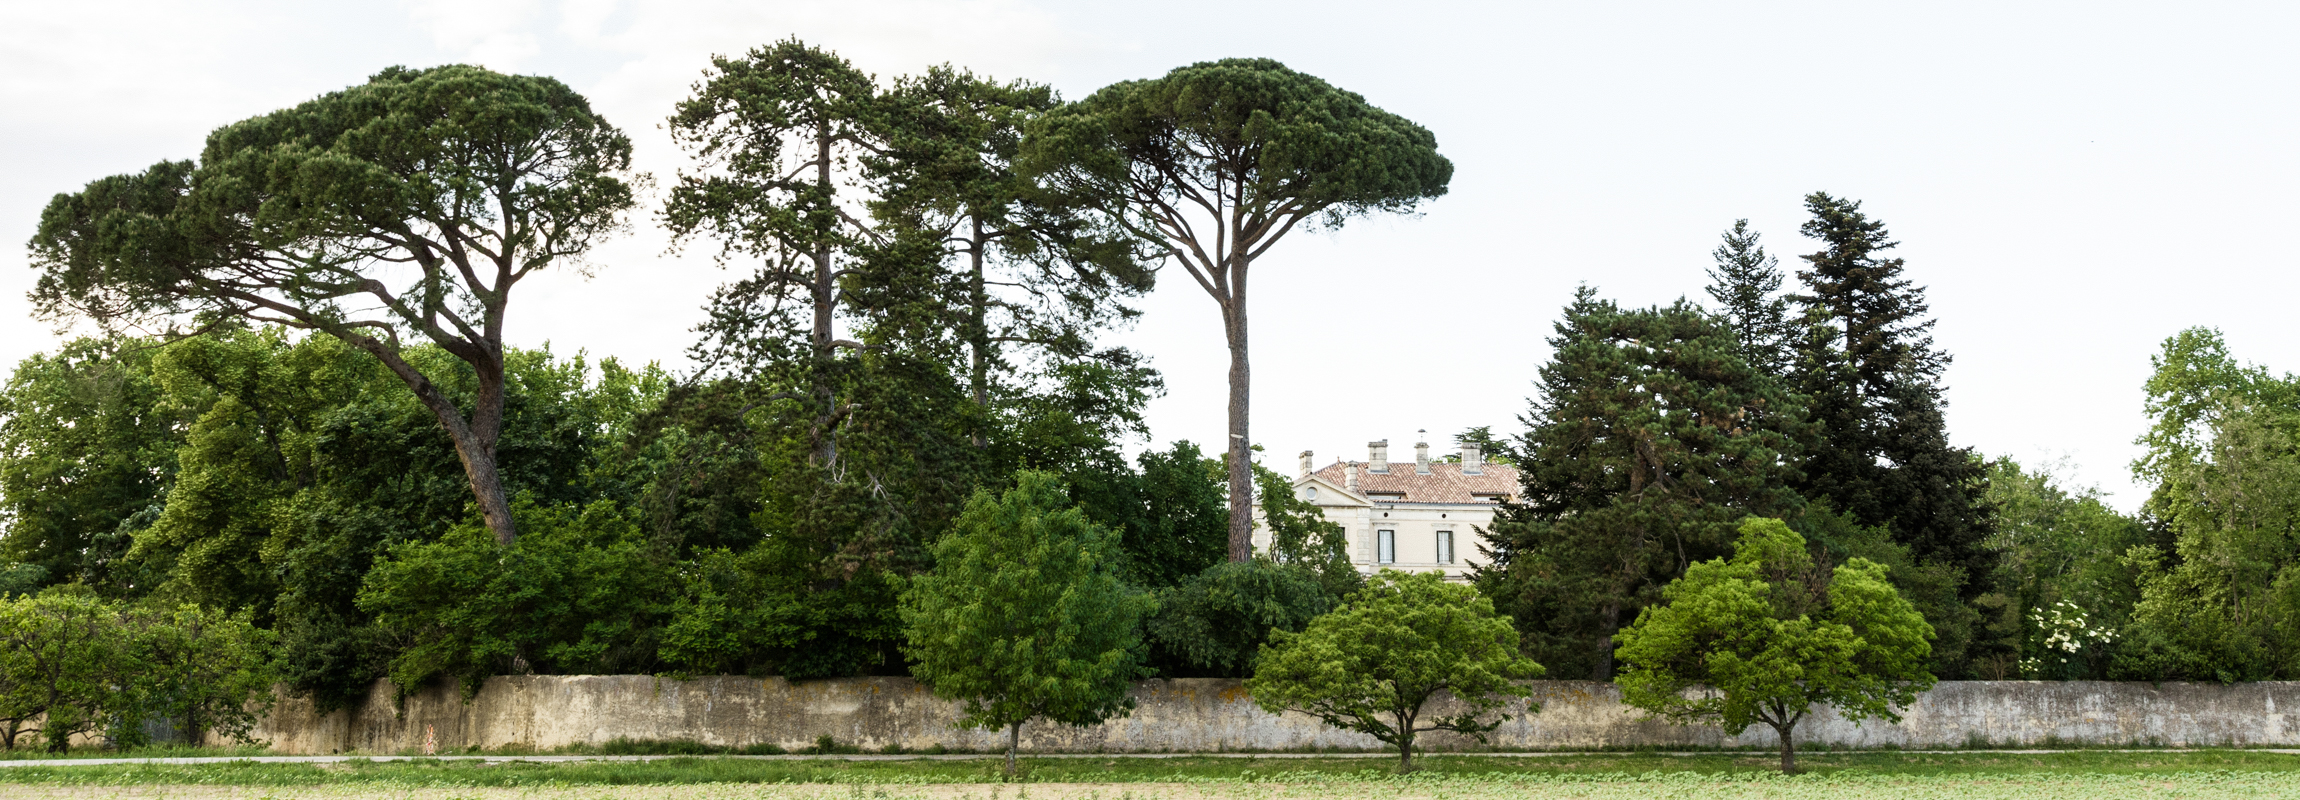 C'est la vue de l'Hôtel Château de Montcaud que vous avez en arrivant de Bagnol-sur-Cèze. Situé en Provence, dans le sud de la France, l'hôtel château est entouré d'un magnifique parc avec des arbres centenaires et un mur historique.